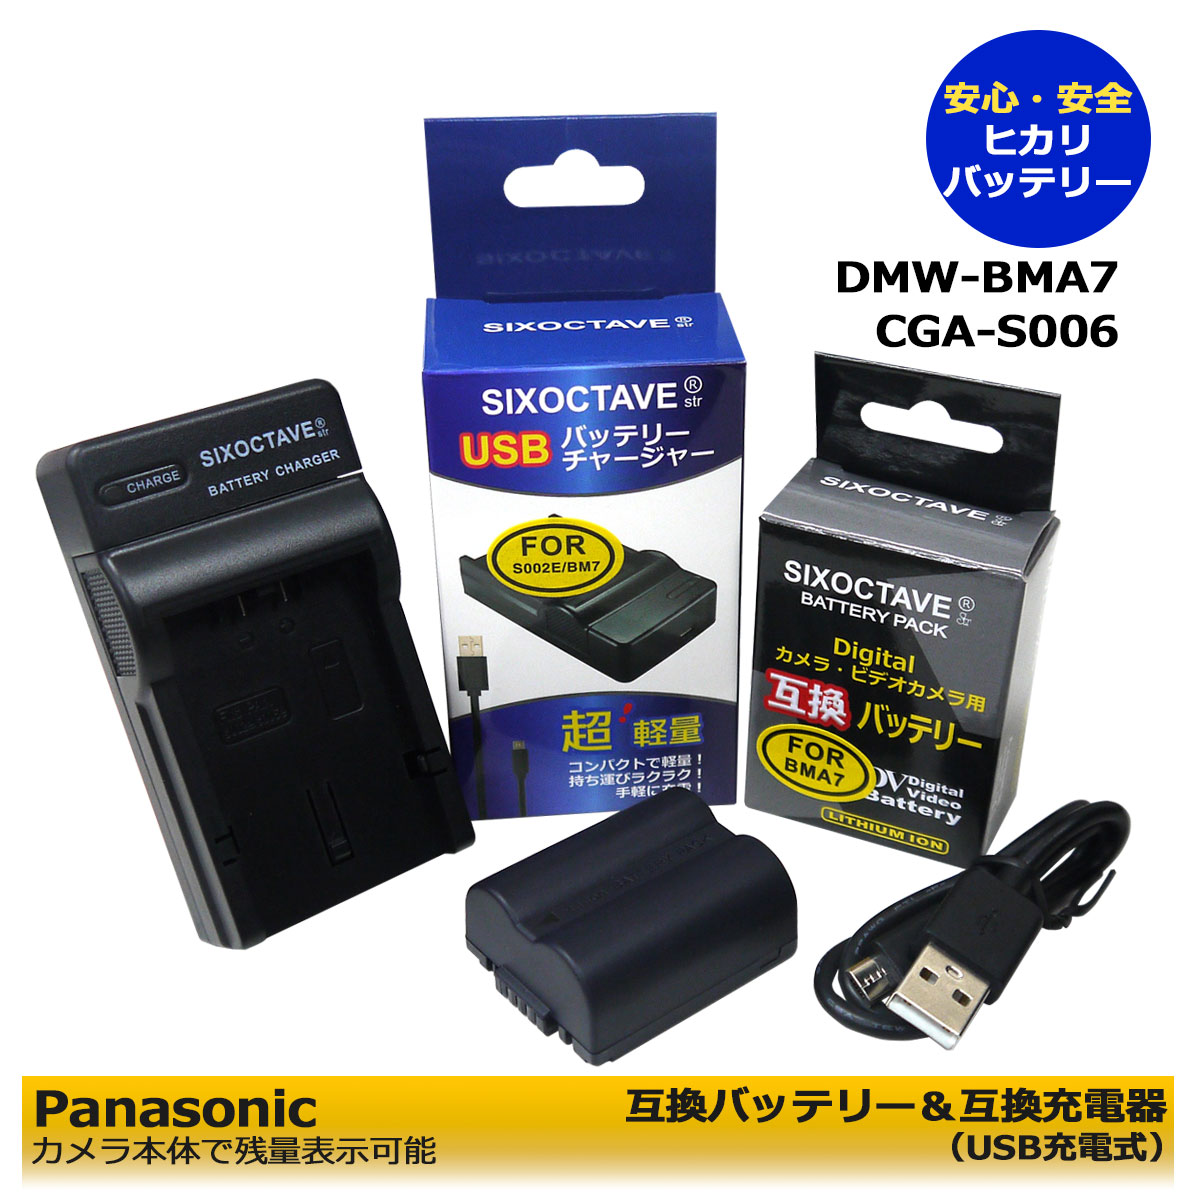 楽天市場】DMW-BCM13 【あす楽対応】 Panasonic パナソニック 互換バッテリー 2個 と 互換USB充電器の 3点セット DMC-FT5  / DMC-FT5-A / DMC-FT5-D / DMC-FT5-K / DMC-FT5-S / DMC-TF5 DMC-TS5 / DMC-TS5-A  / DMC-TS5-D / DMC-TS5-K / DMC-TS5-S / DMC-TS6 純正品にも対応 :